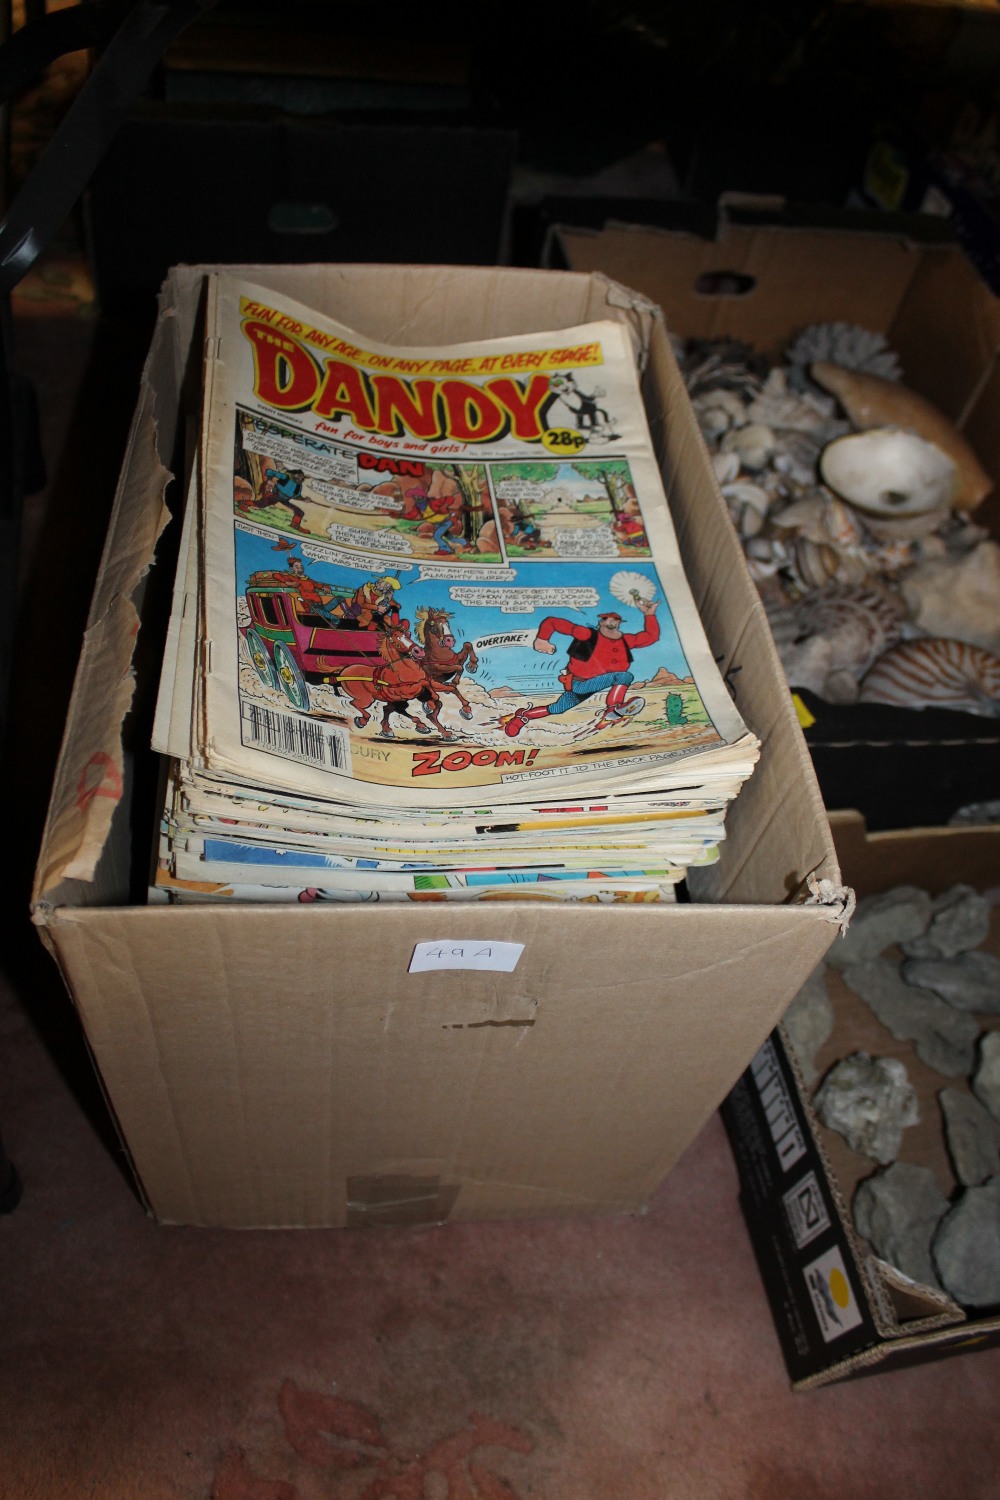 A BOX OF DANDY COMICS